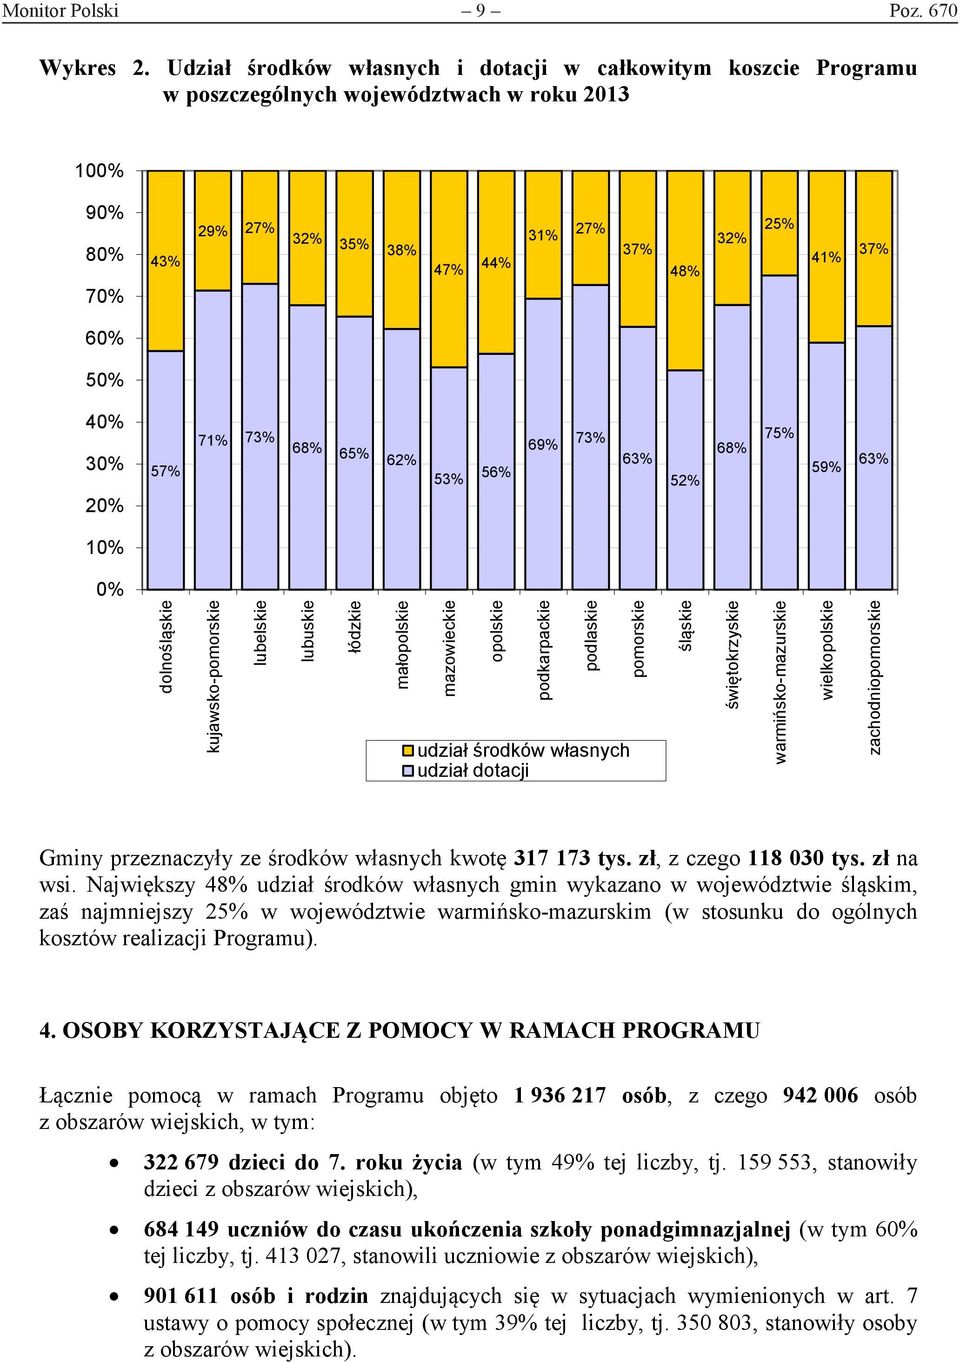 30% 20% 57% 71% 73% 68% 65% 62% 53% 56% 69% 73% 63% 52% 68% 75% 59% 63% 10% 0% dolnośląskie kujawsko-pomorskie lubelskie lubuskie łódzkie małopolskie mazowieckie opolskie podkarpackie podlaskie